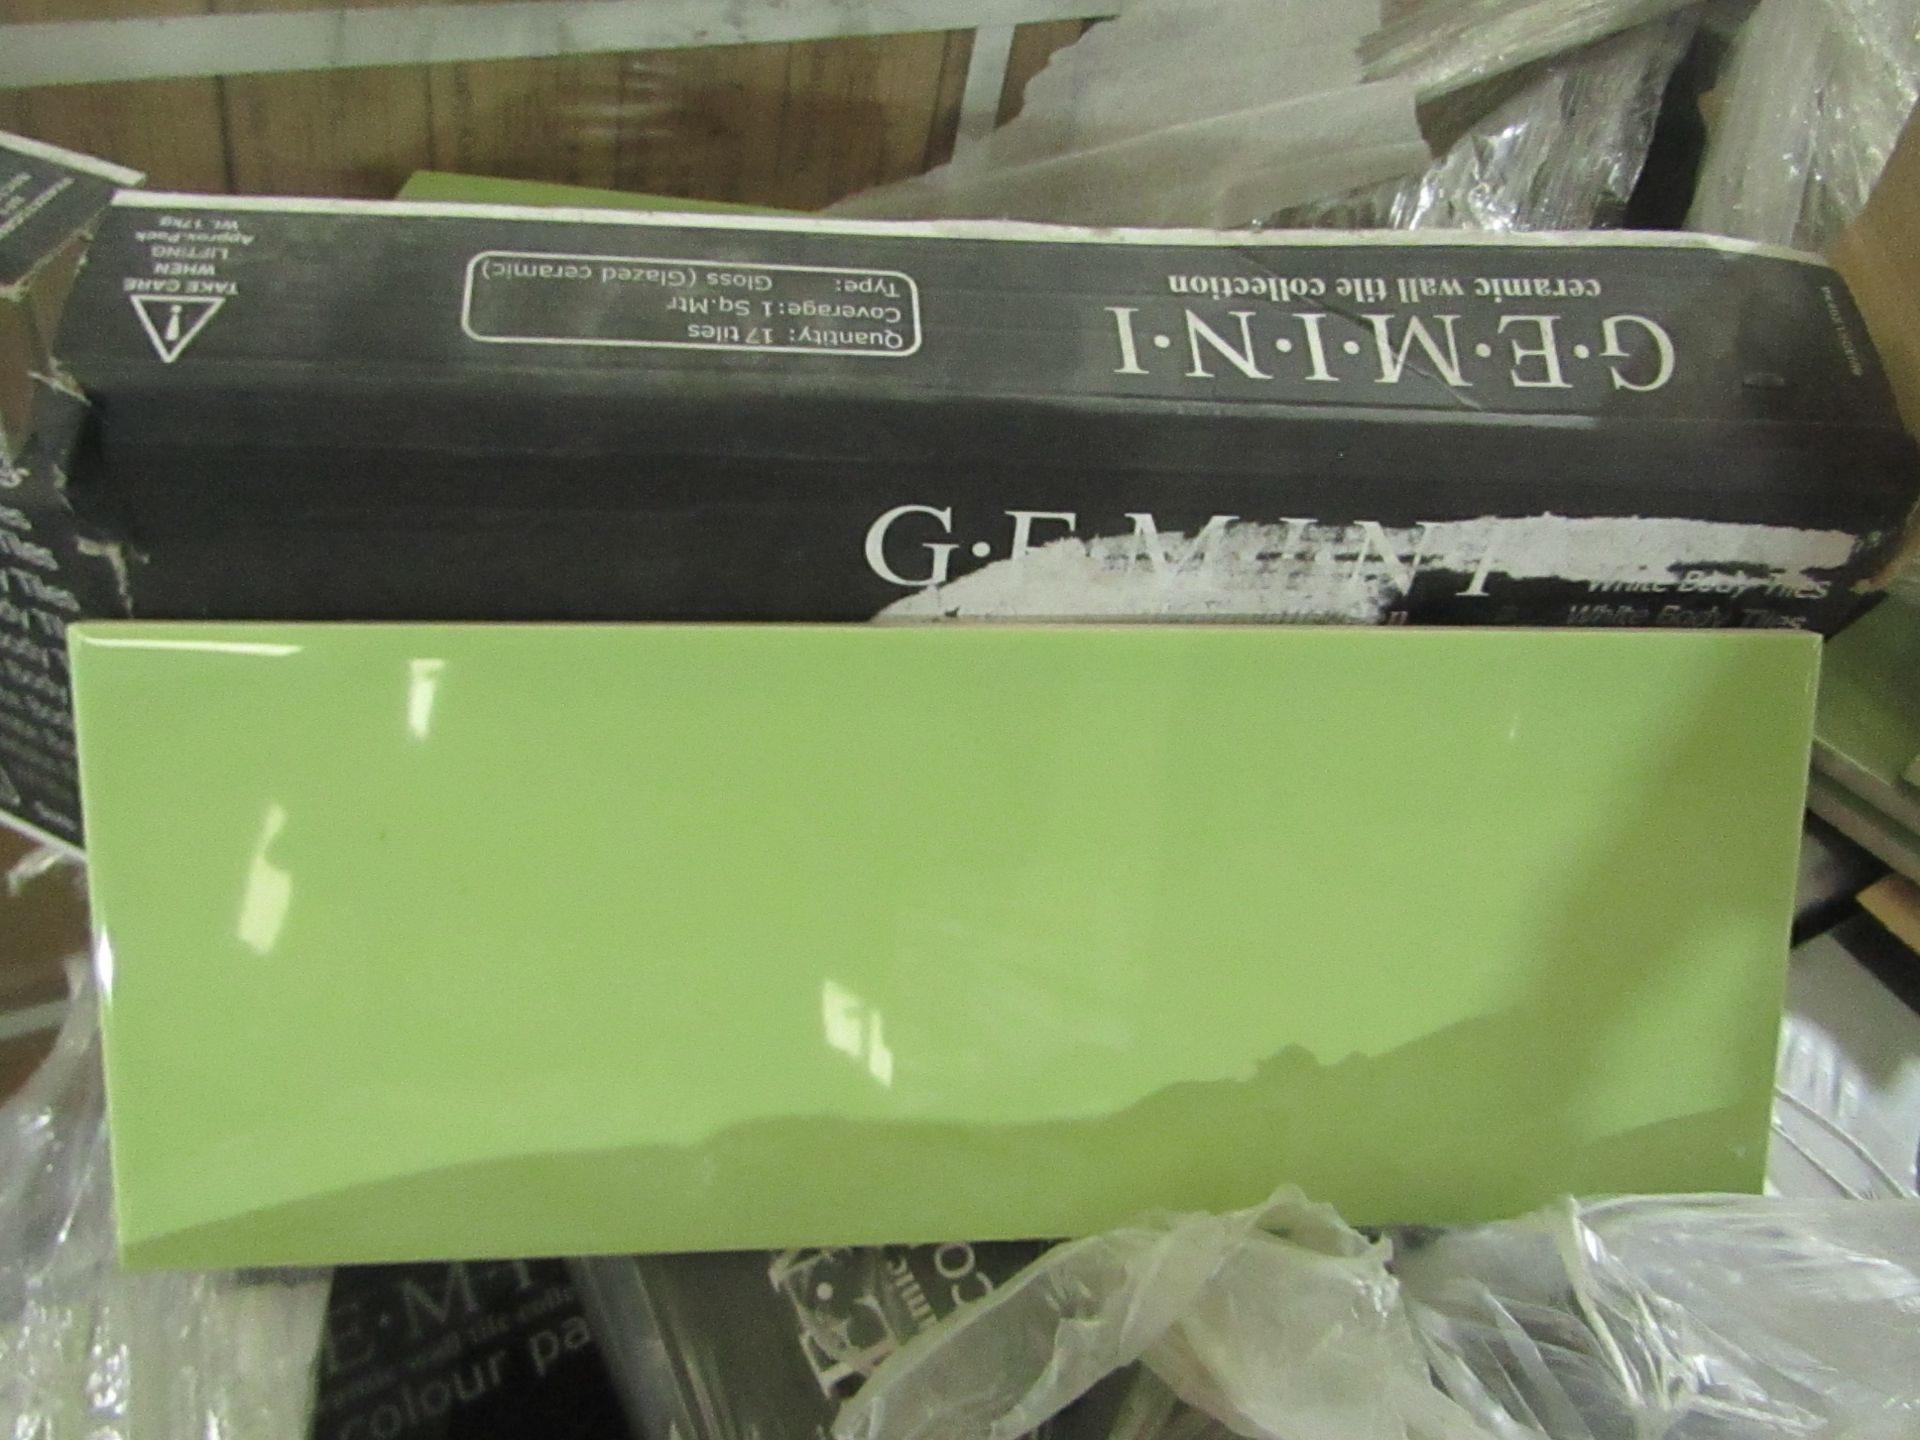 13x Packs of 17 Gemini Green Gloss Glazed Ceramic tiles 400x150cm, brand new. Total RRP £389.87